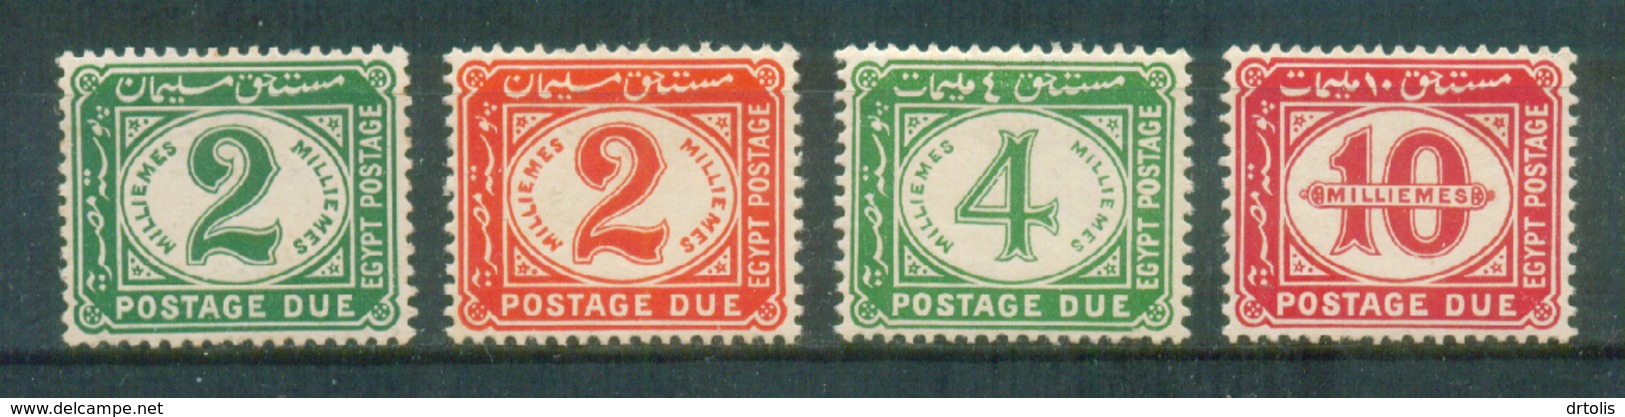 EGYPT / 1921 / POSTAGE DUE / MNH - 1915-1921 Protectorat Britannique